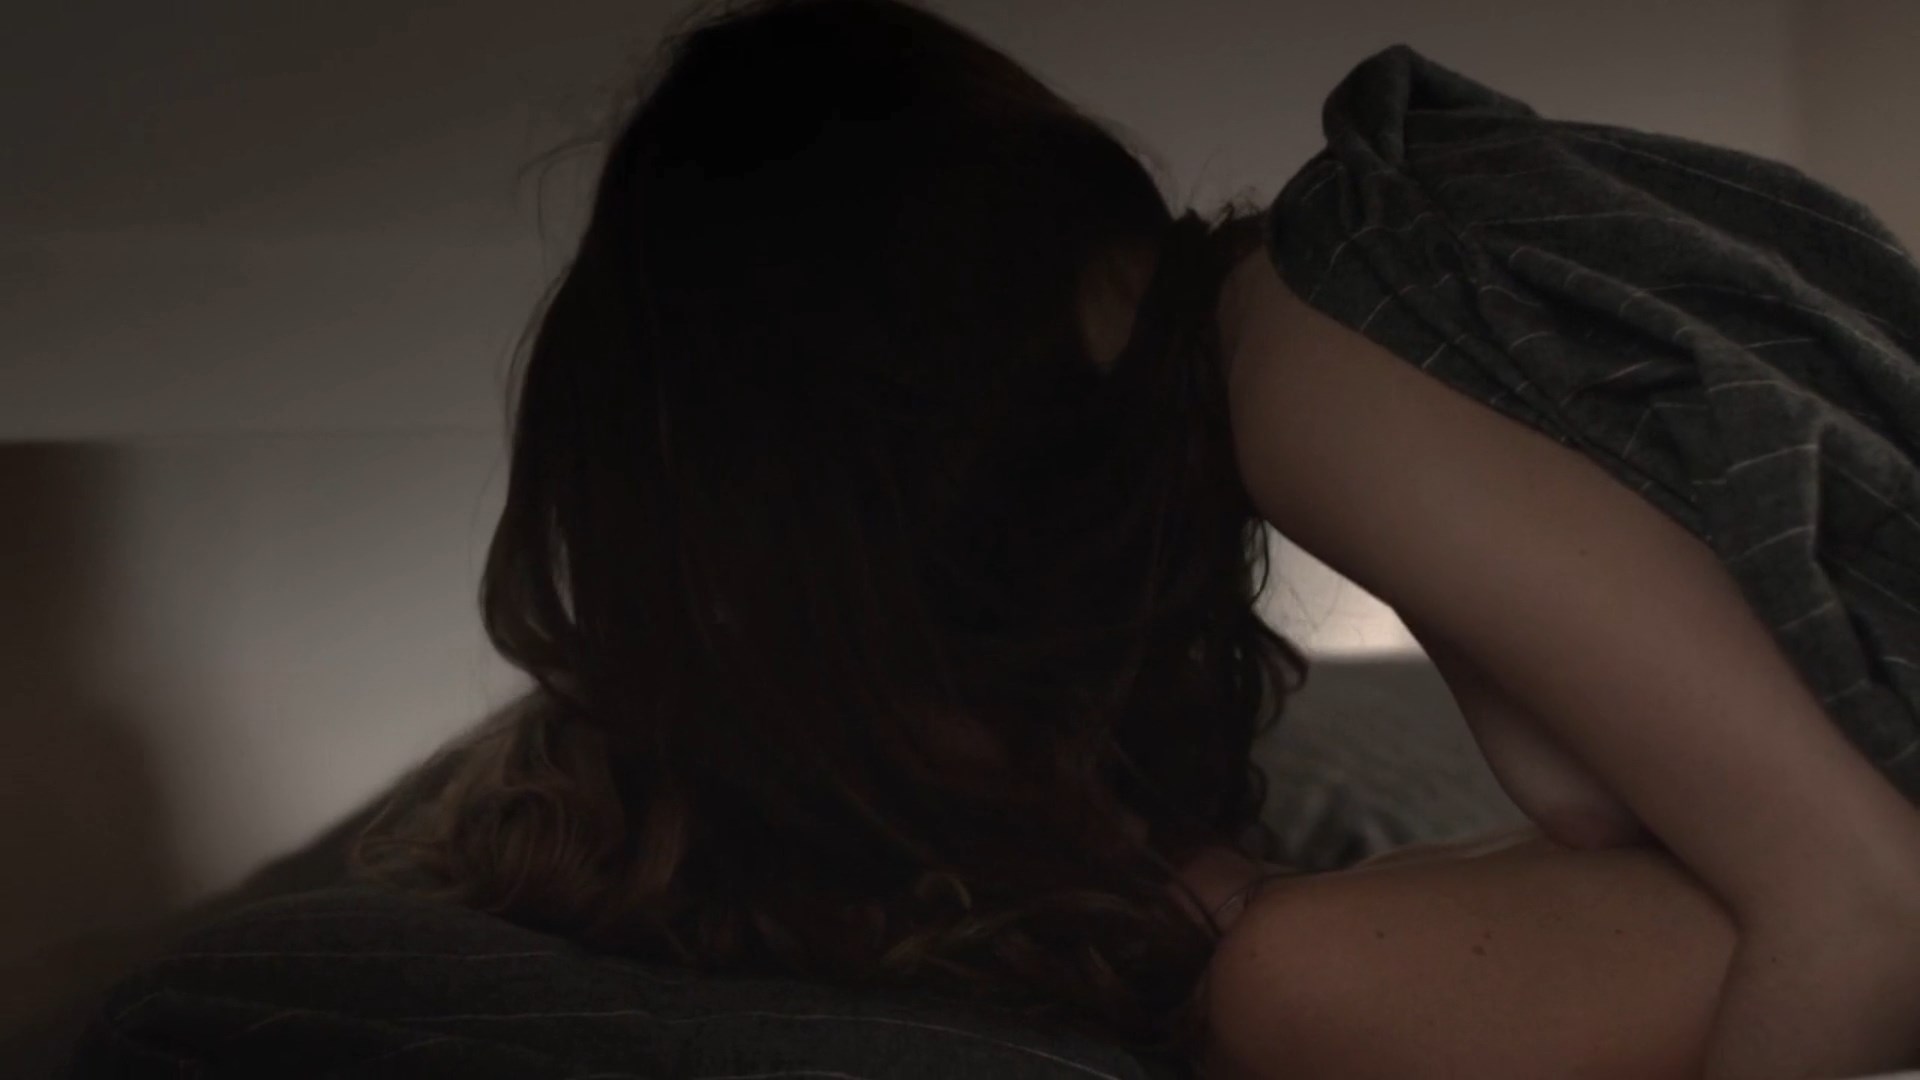 Noemie Yelle, Carla Turcotte - FemininFeminin s01e01 (2014) HD 1080p.